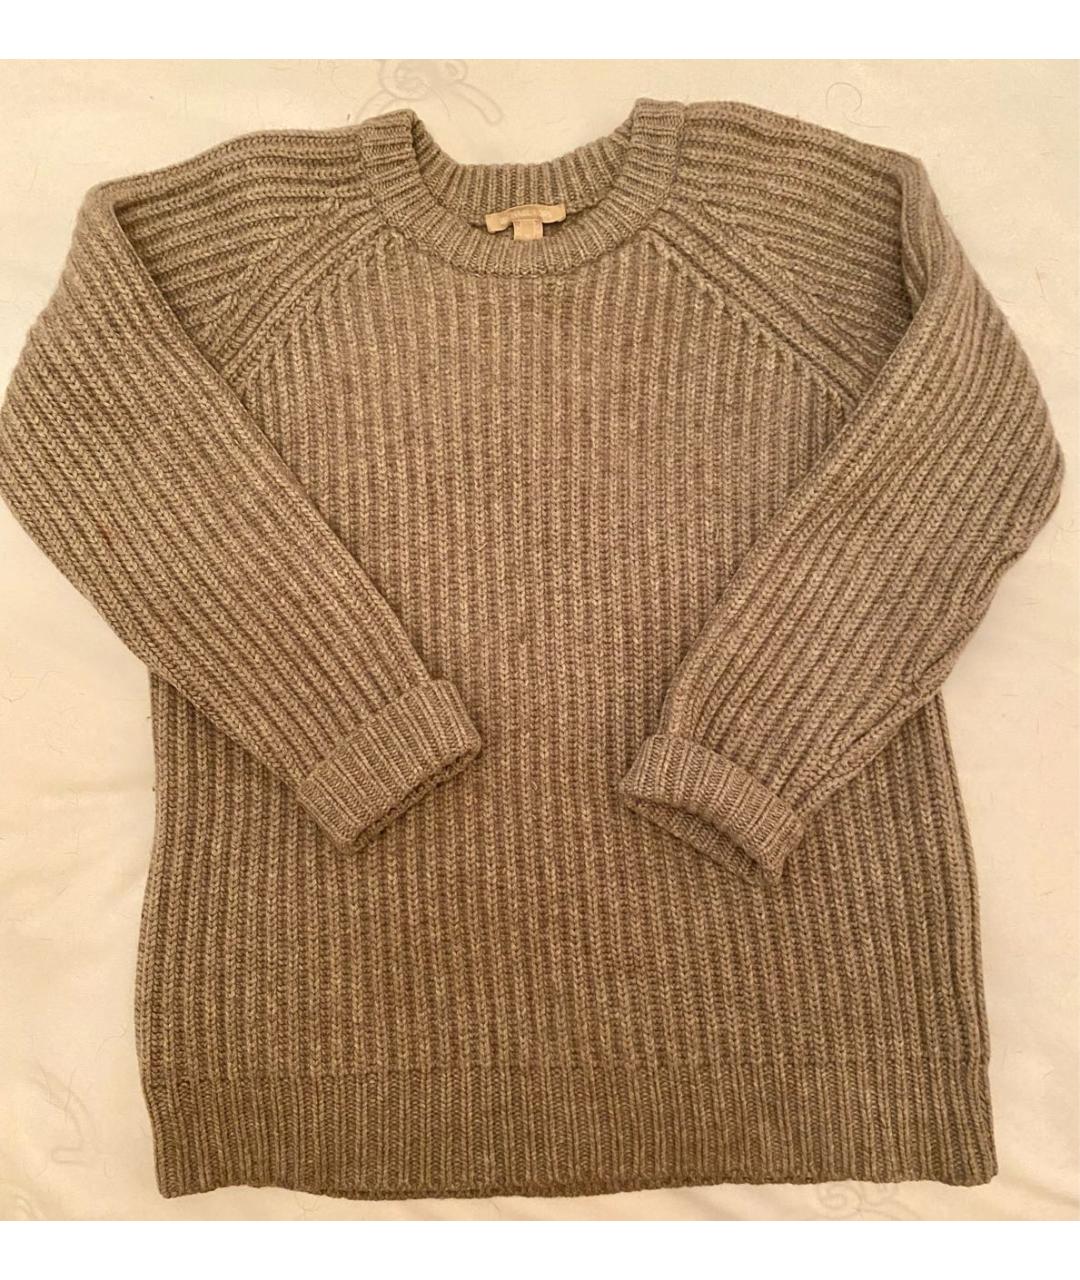 MICHAEL KORS Бежевый кашемировый джемпер / свитер, фото 5